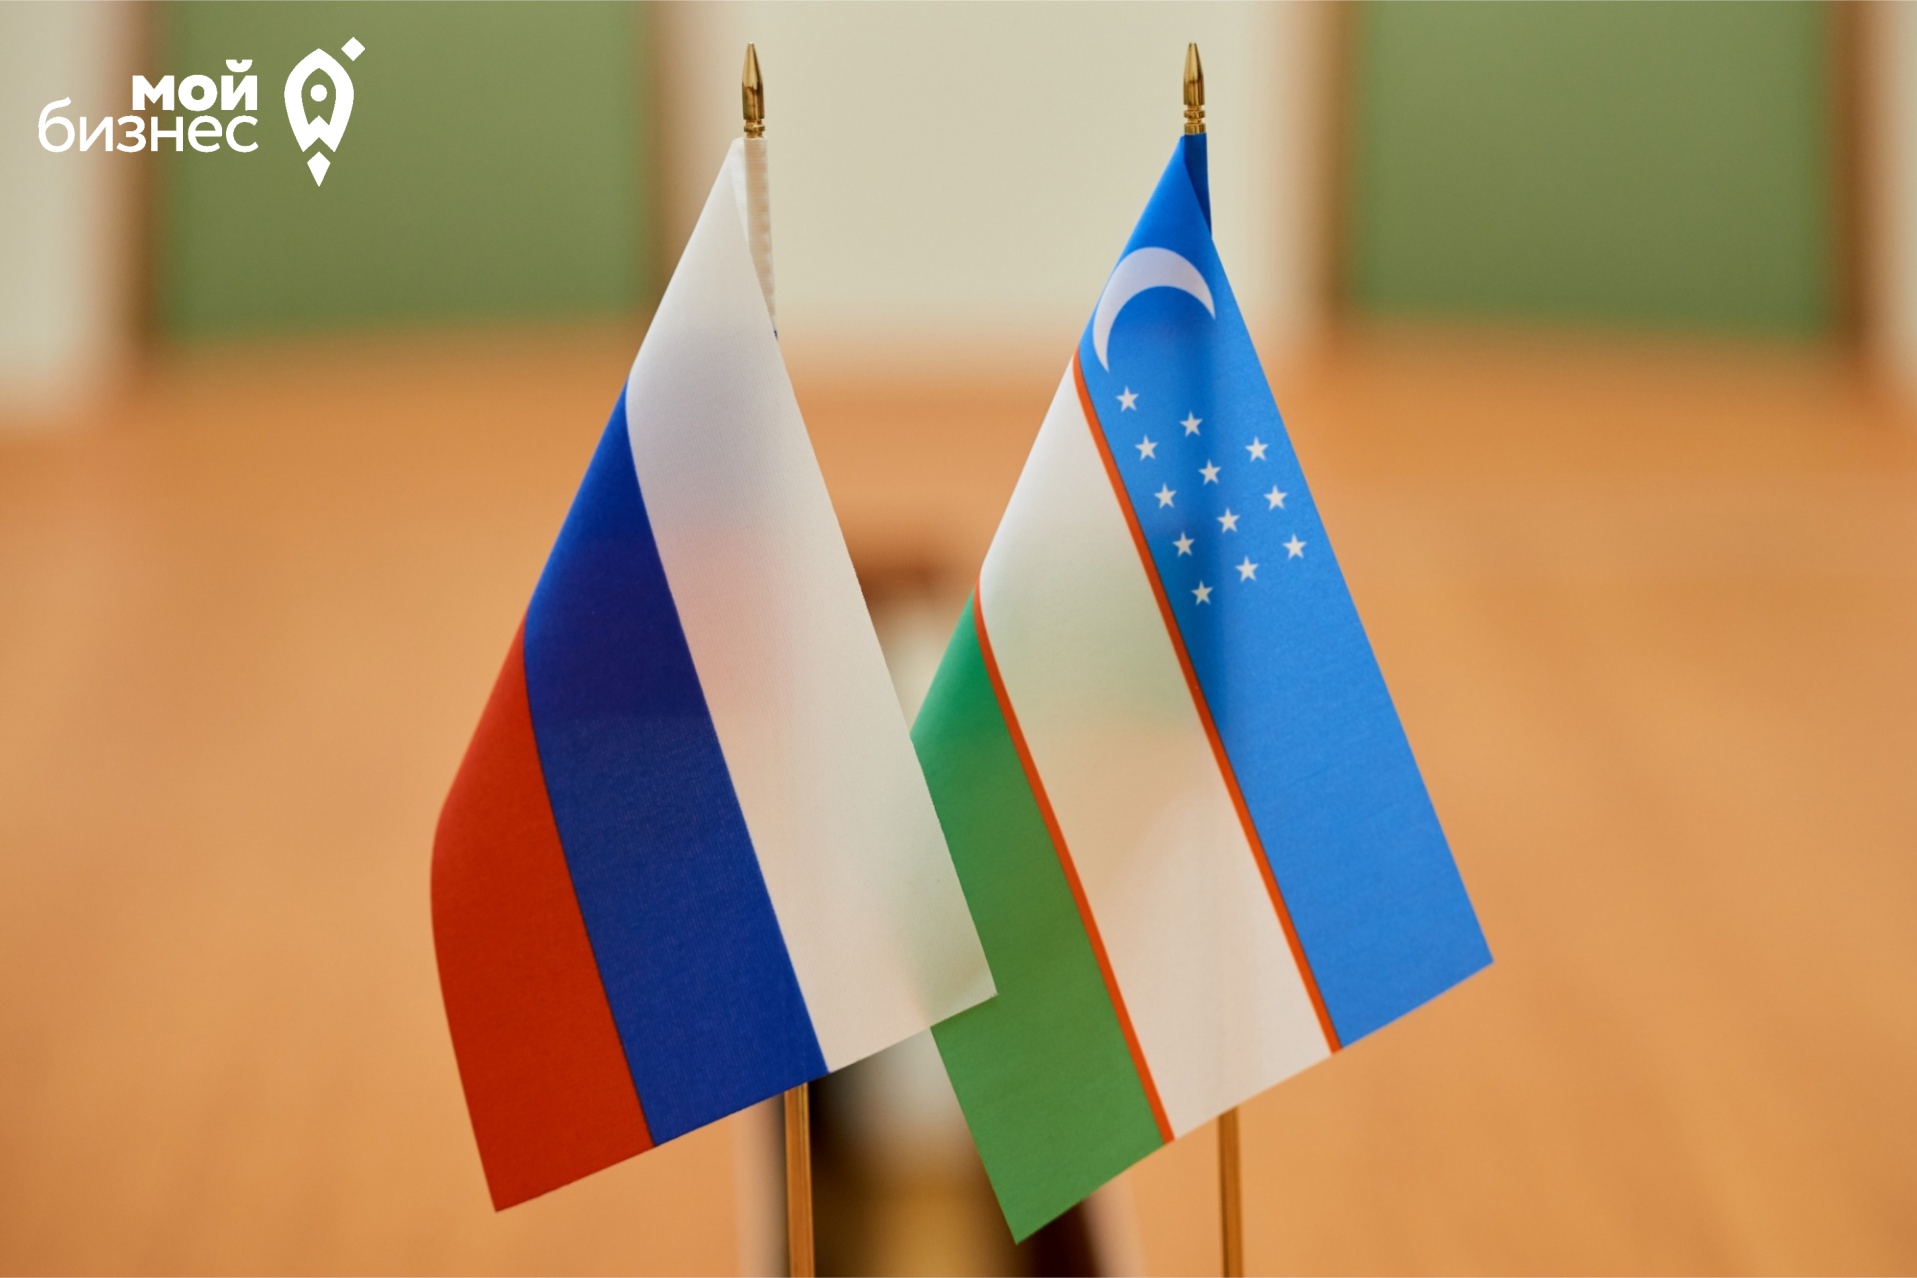 Волгоградская область развивает сотрудничество с регионами Узбекистана